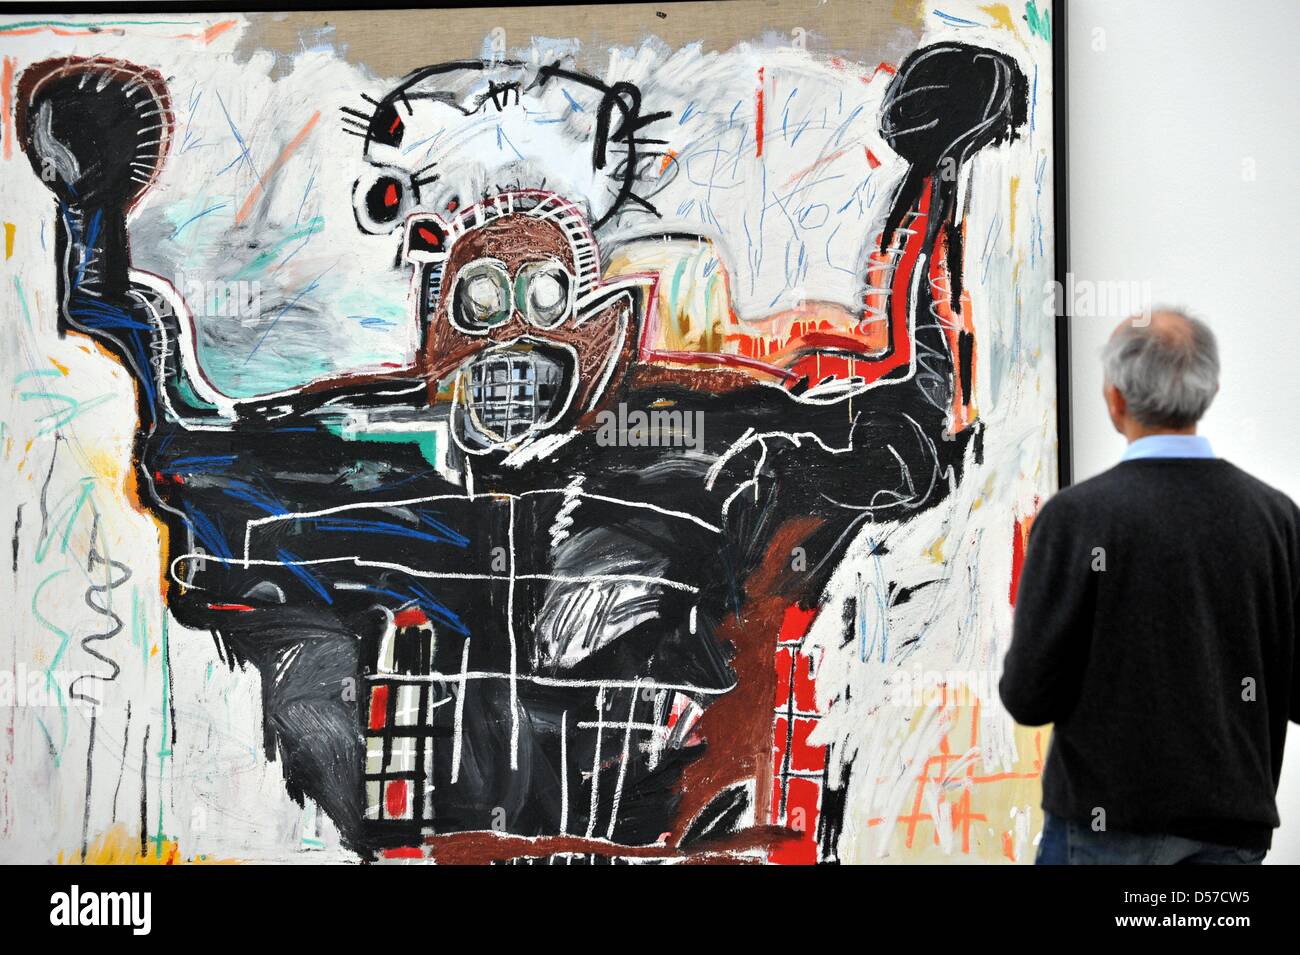 Ein Besucher der Presse private Ansichten der Ausstellung '' Basquiat'' schaut das Gemälde "Untitled" (Boxer, 1982) im Museum der Fondation Beyeler in Riehen bei Basel, Schweiz, 7. Mai 2010. Auf der Occaision des 50. Geburtstages des 1988 verstorbenen Künstlers Jean-Michel Basquiet widmet die Fondation Beyeler eine große Retrospektive mit über 100 Gemälde, Papierarbeiten und Objekte Stockfoto